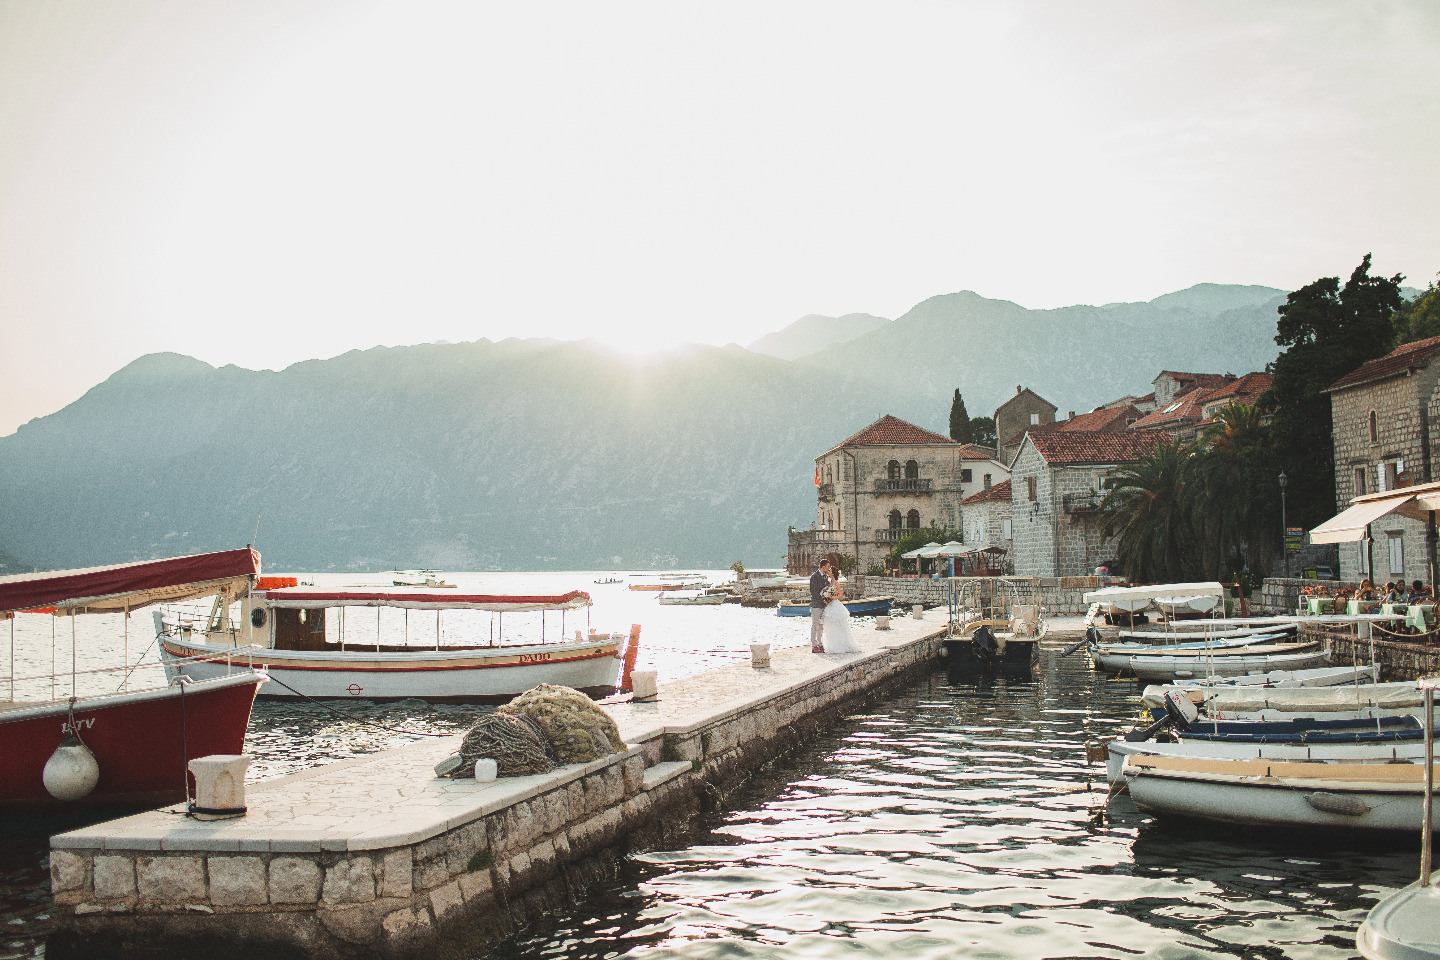 ФОТО ИЗ СТАТЬИ: Свадьба для двоих среди уютных улочек Черногории